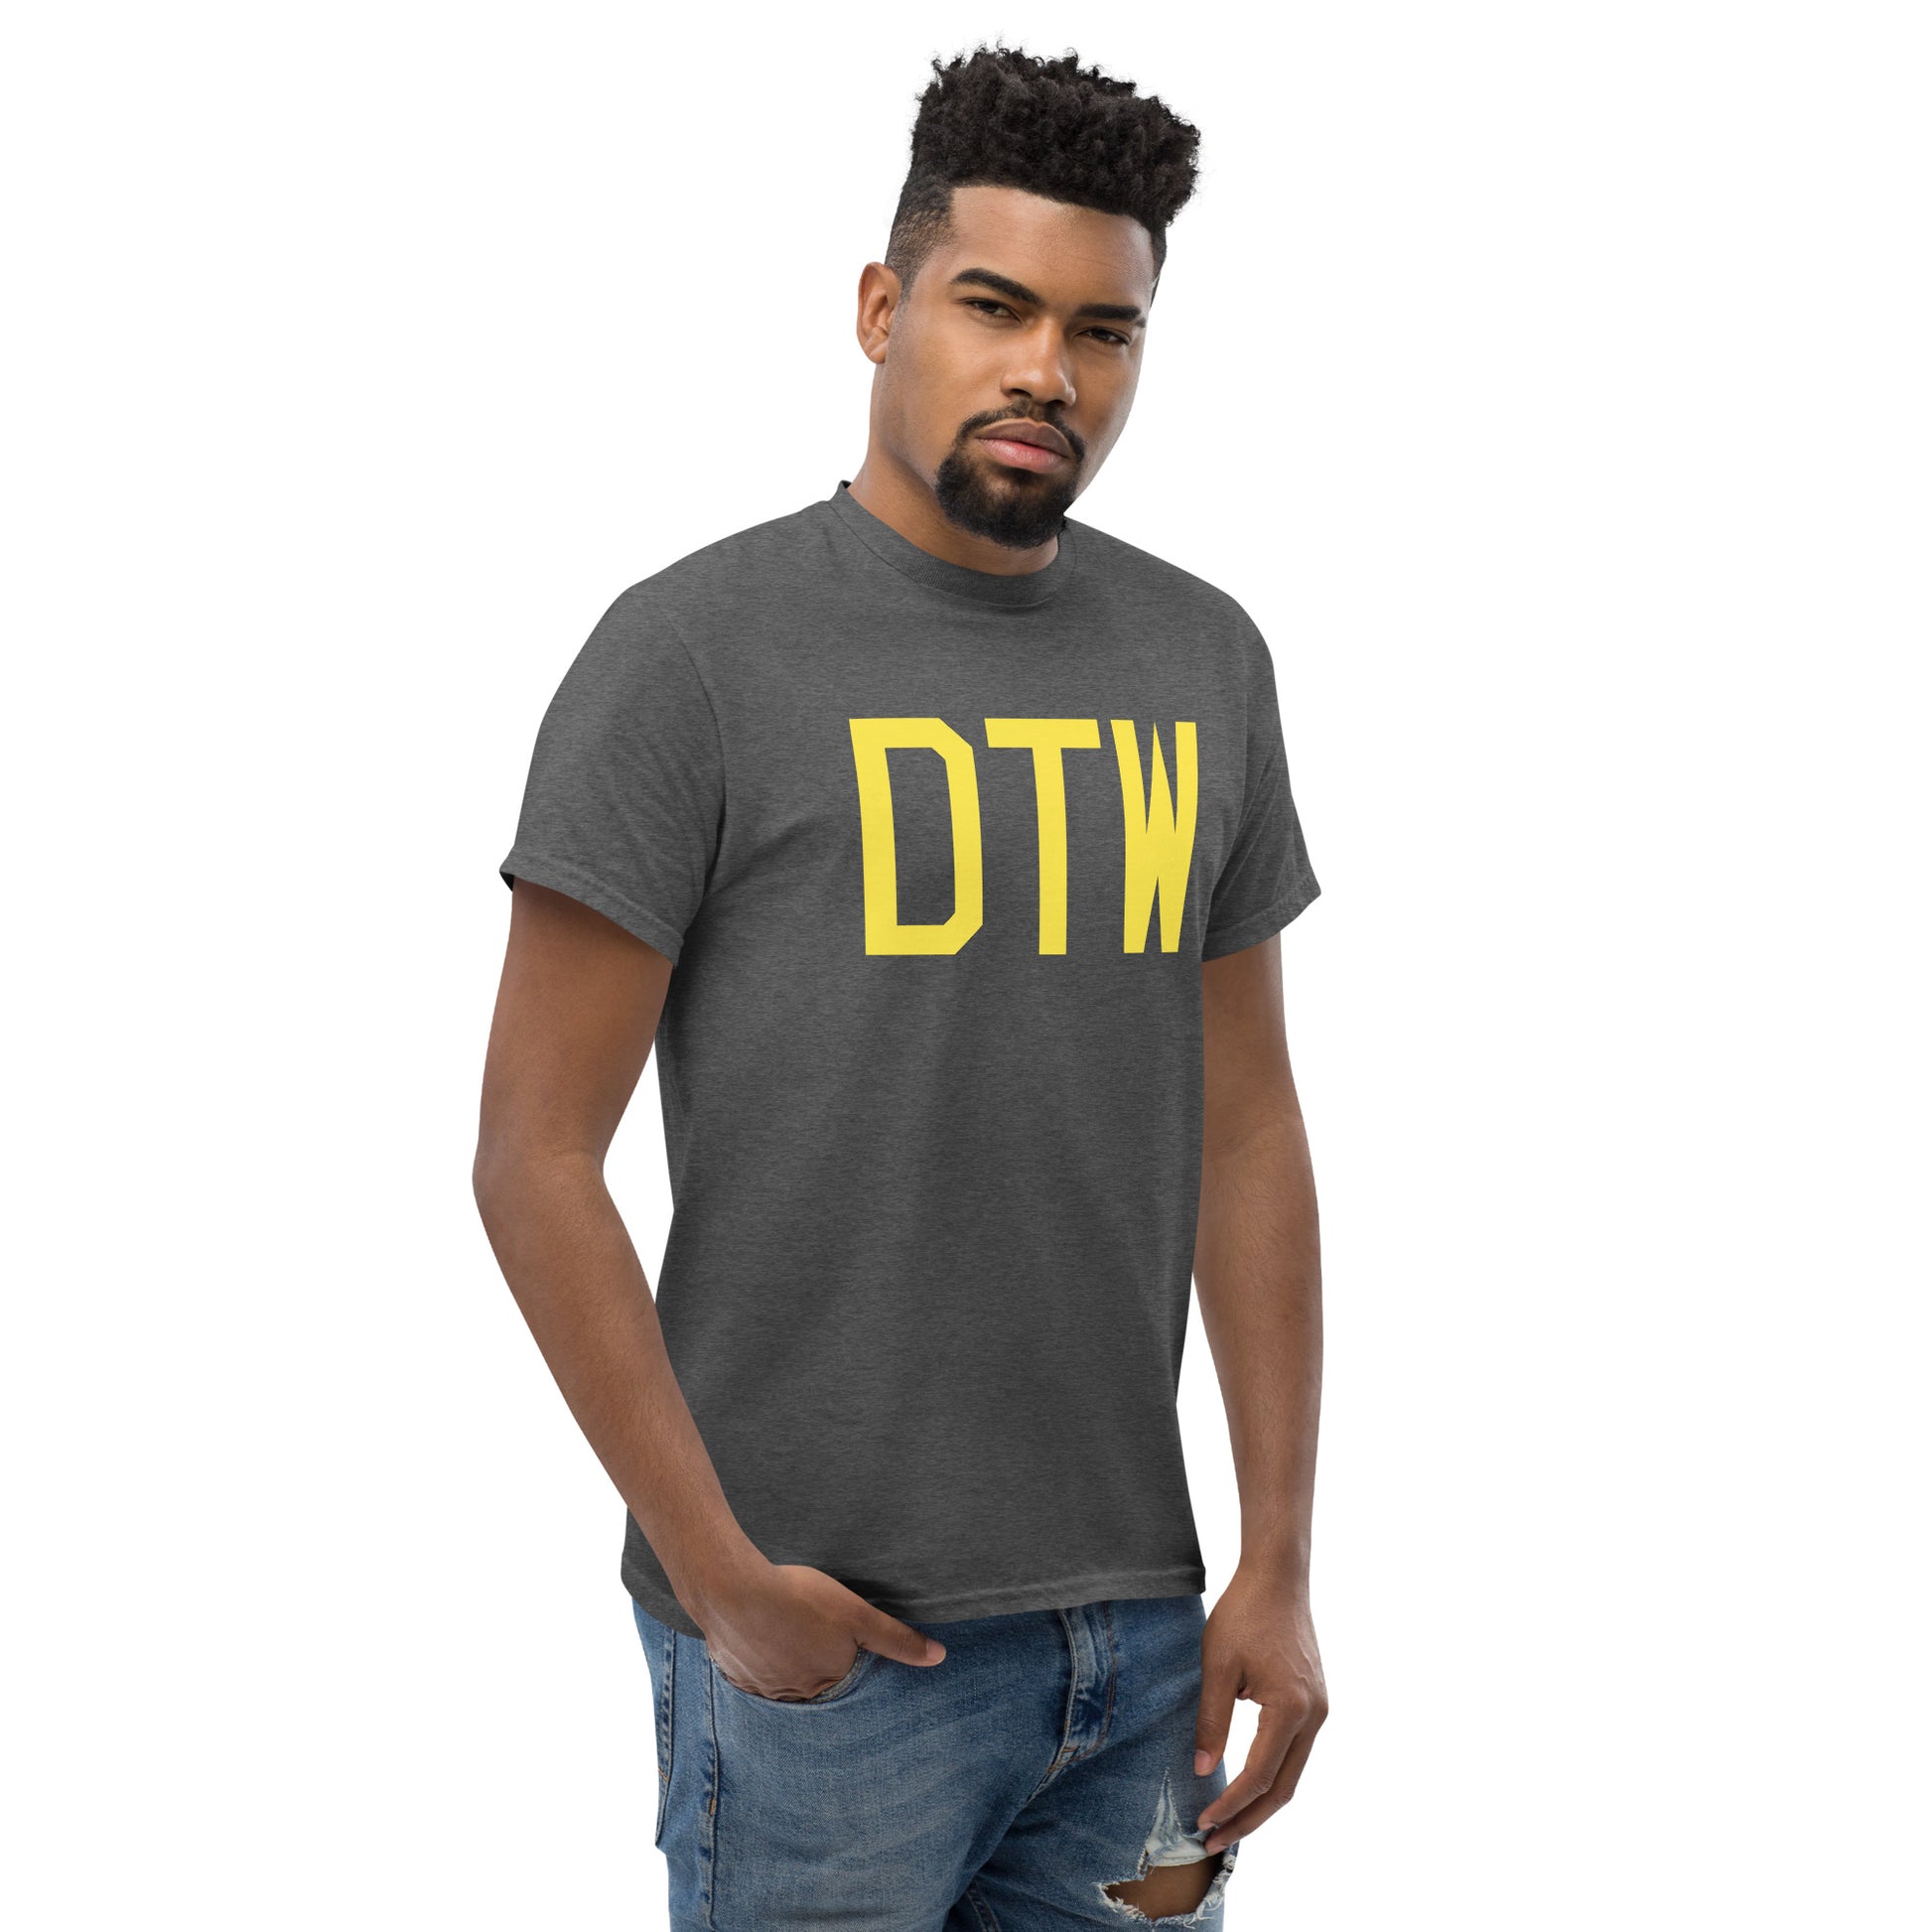 Aviation-Theme Men's T-Shirt - Yellow Graphic • DTW Detroit • YHM Designs - Image 08